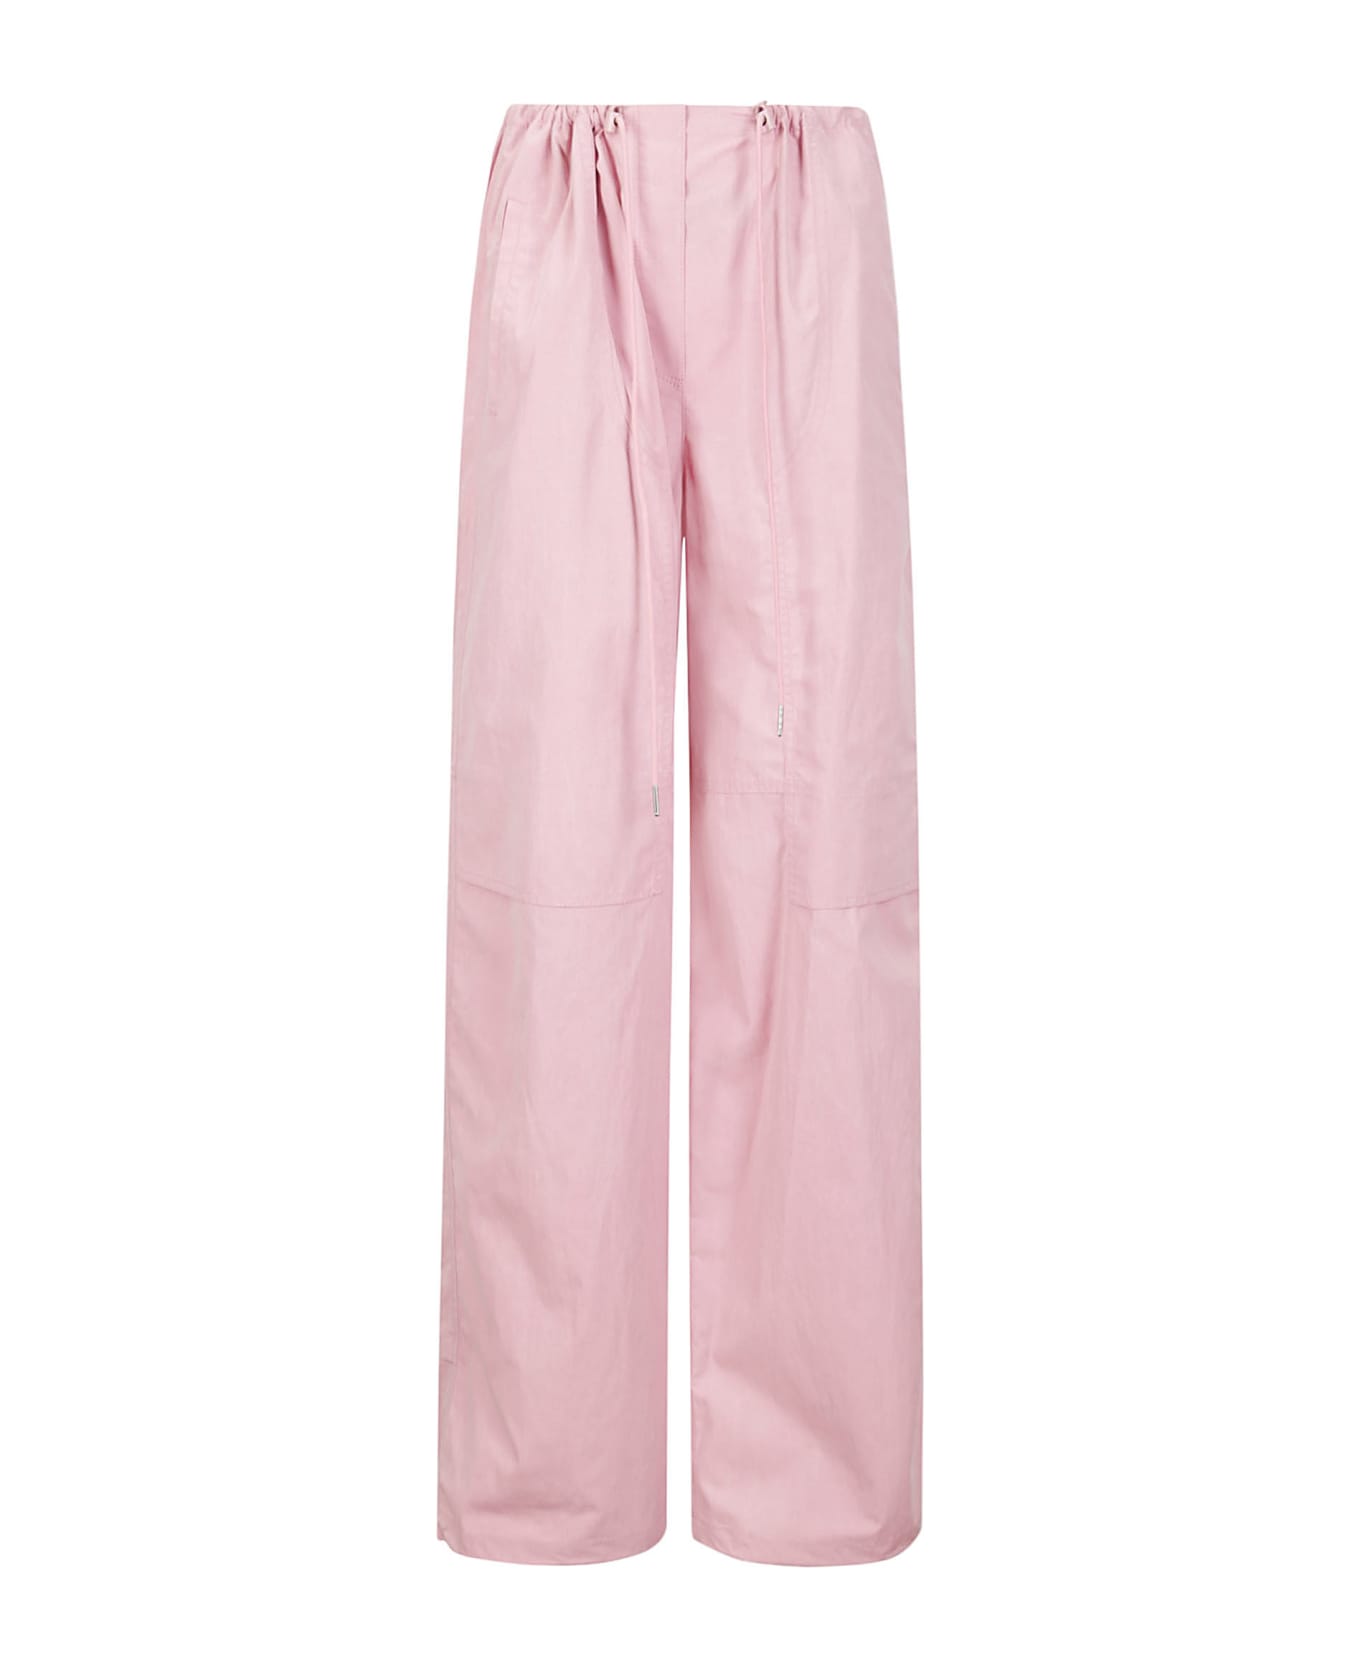 Juun.J Ice Pink Utility Pants - PINK ボトムス